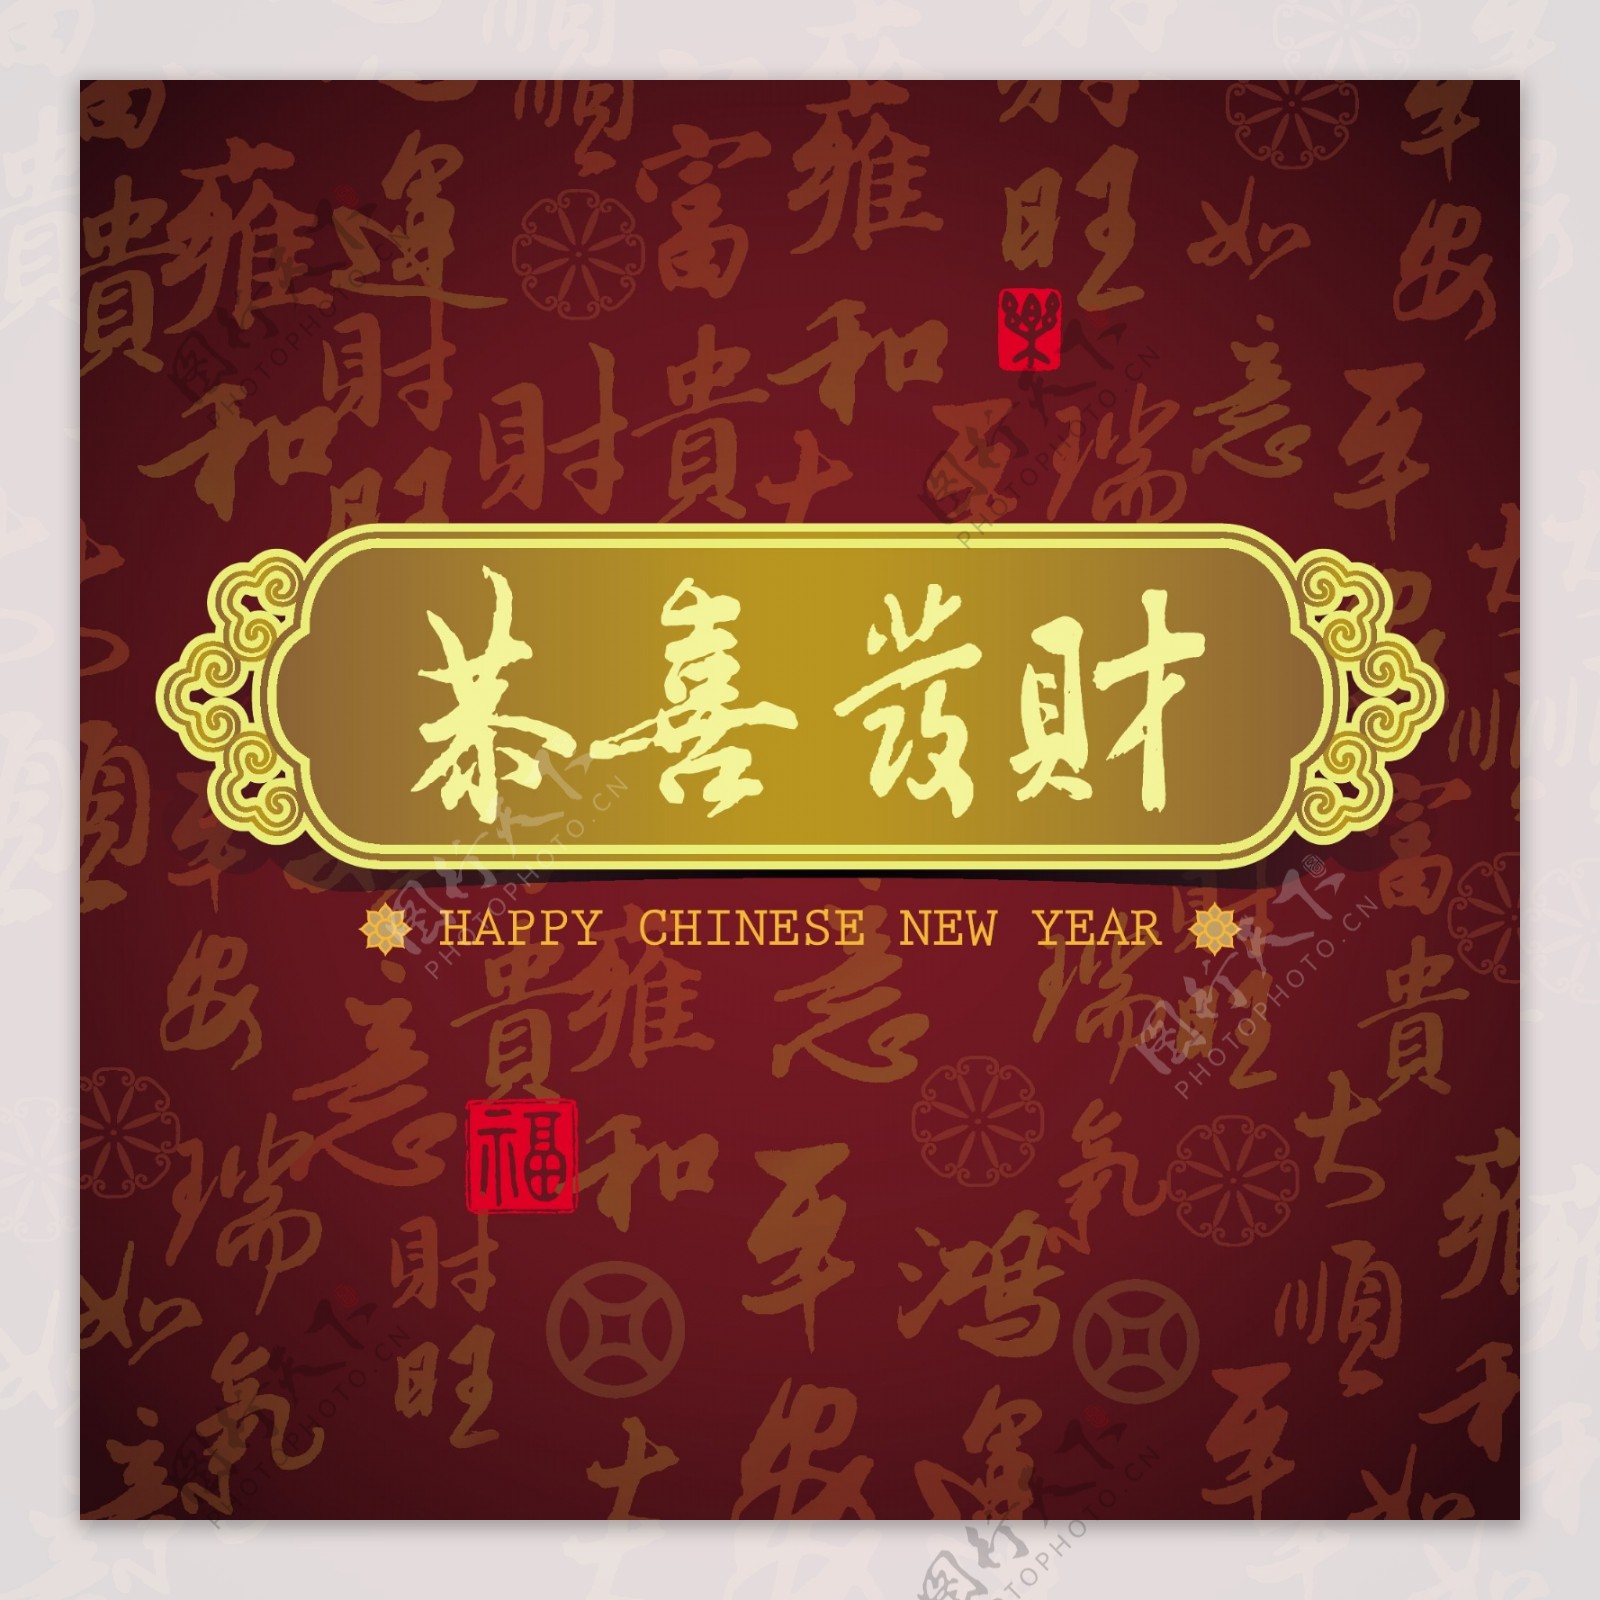 精美的中国新年祝福卡片矢量素材